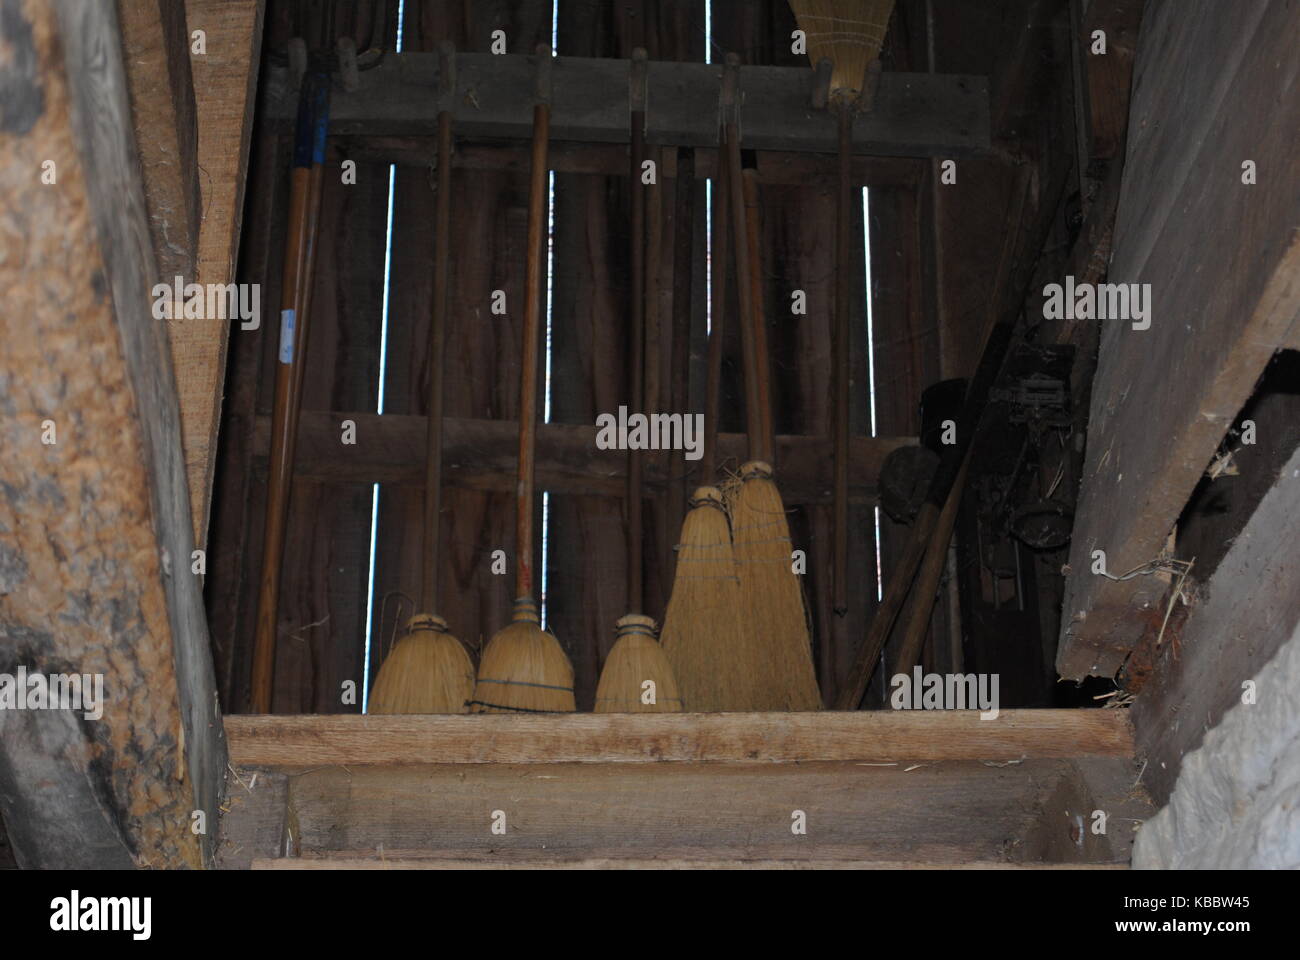 Historical brooms fotografías e imágenes de alta resolución - Alamy